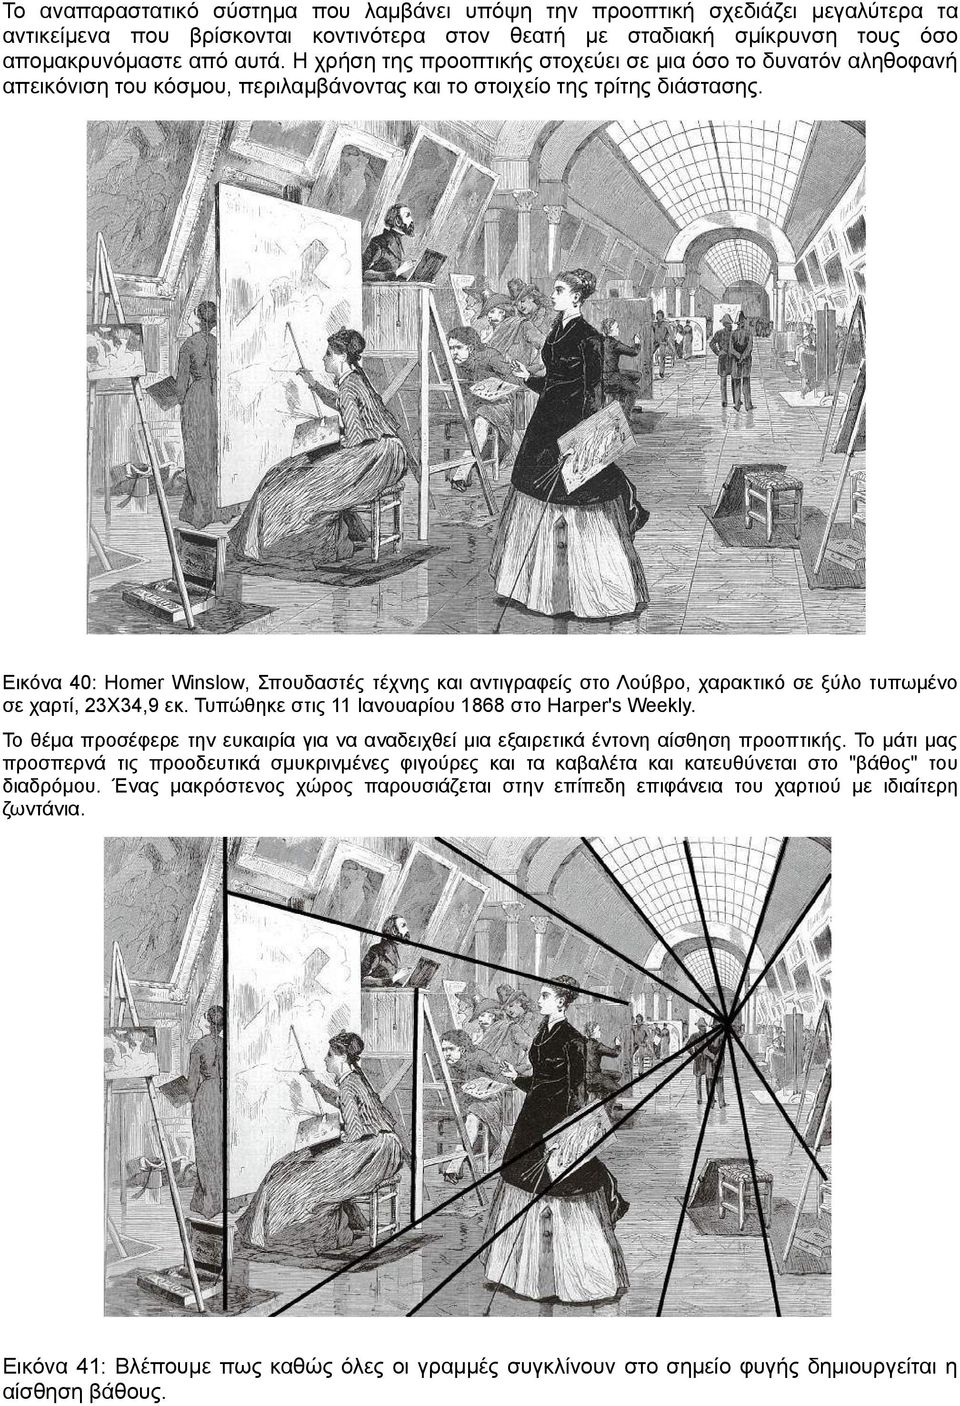 Εικόνα 40: Homer Winslow, Σπουδαστές τέχνης και αντιγραφείς στο Λούβρο, χαρακτικό σε ξύλο τυπωμένο σε χαρτί, 23Χ34,9 εκ. Τυπώθηκε στις 11 Ιανουαρίου 1868 στο Harper's Weekly.